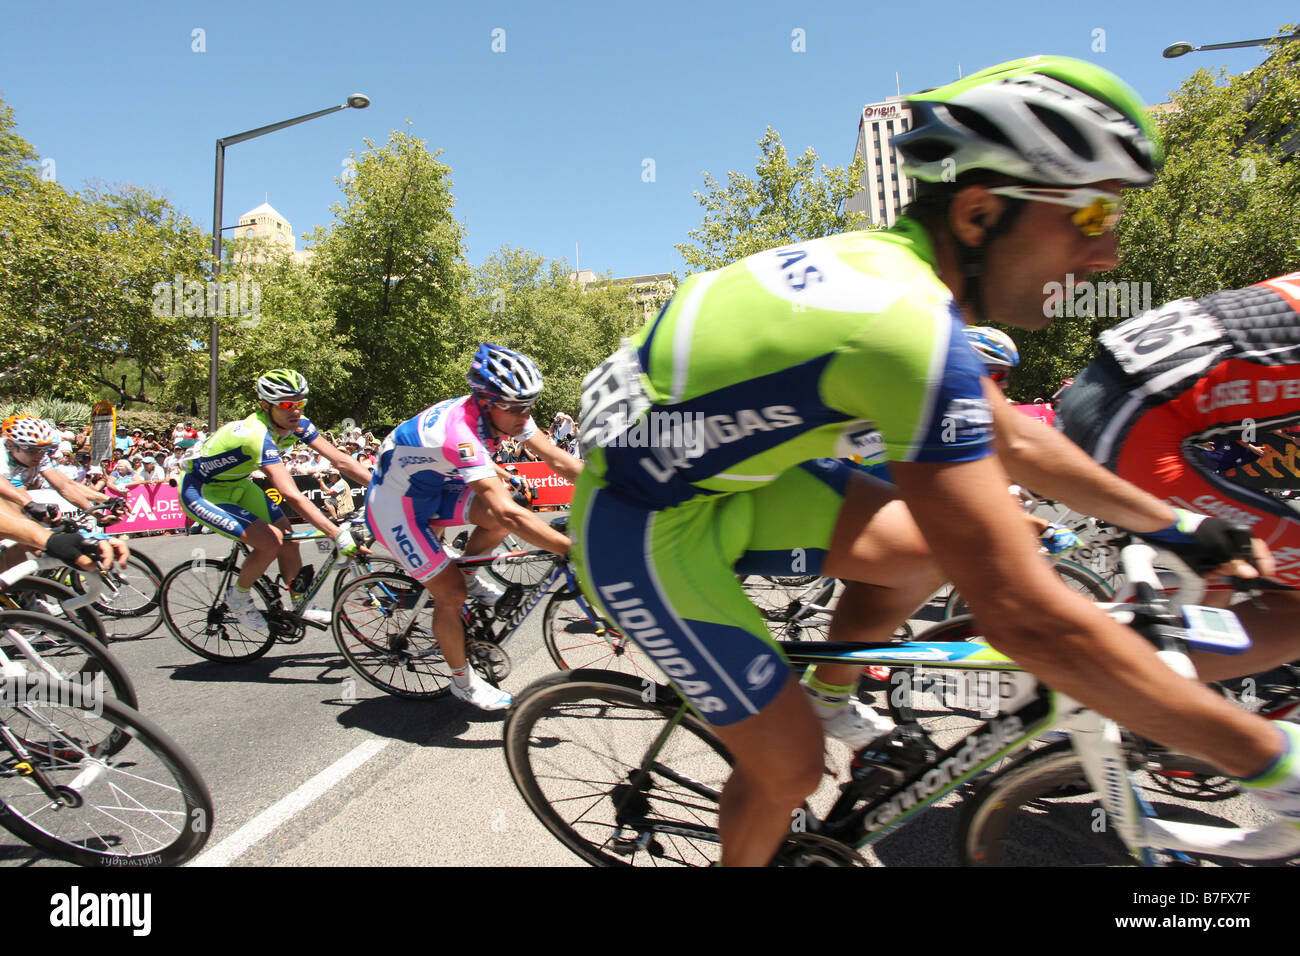 Francesco Chicchi vom Liquigas Team Rennen vorbei auf dem Weg zum siegreichen 6. Etappe der Tour Down Under in Adelaide Australien Stockfoto